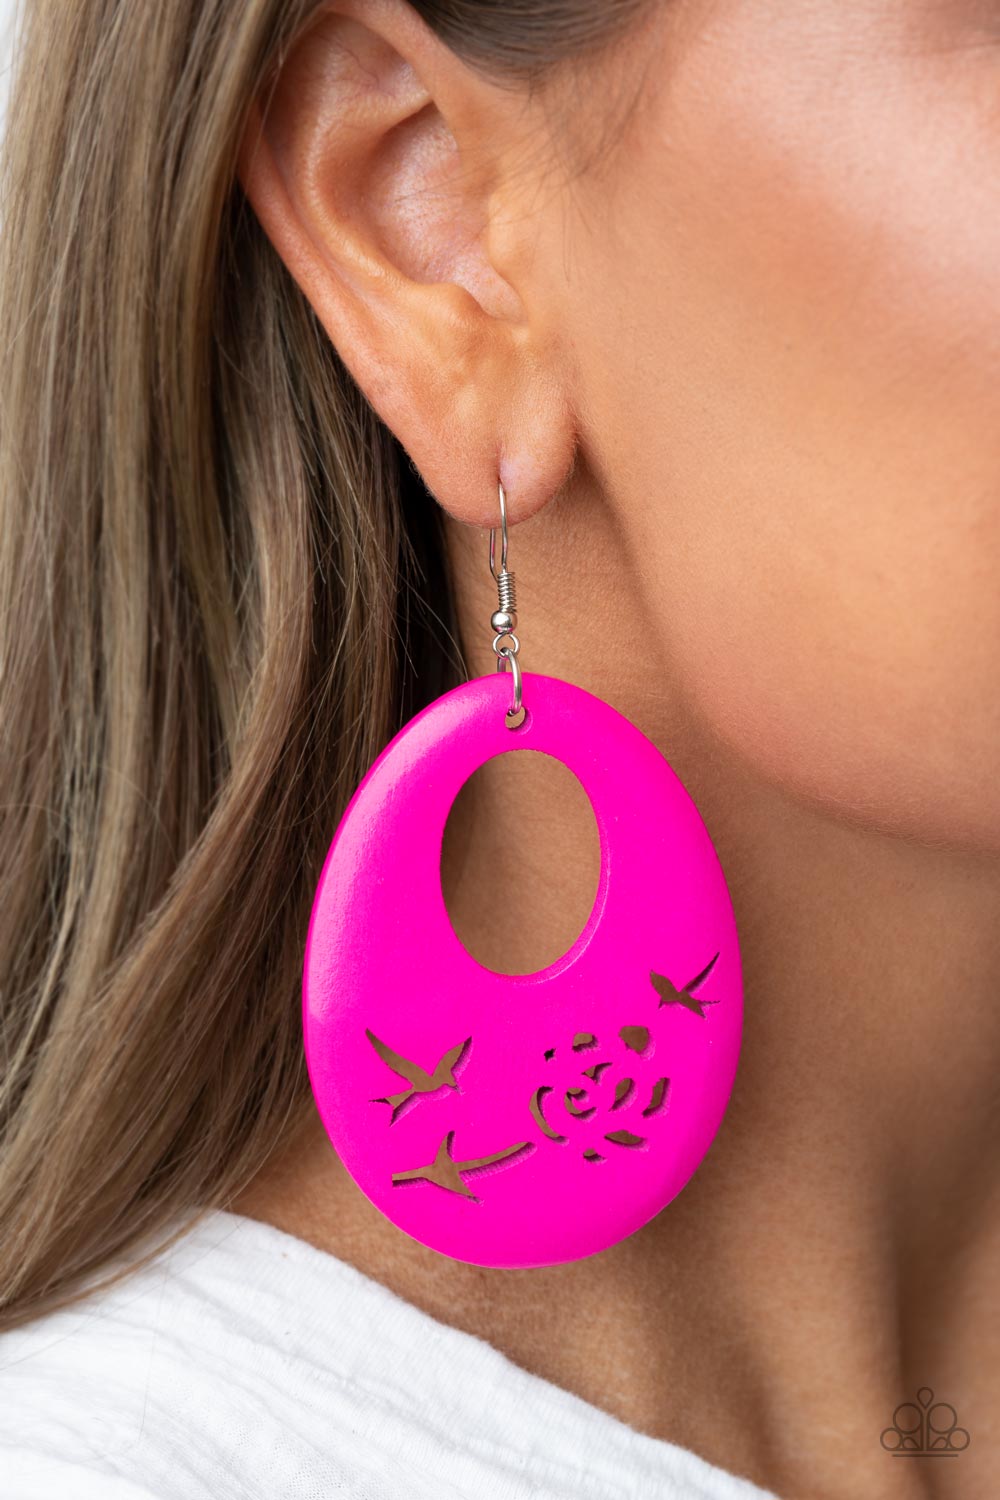 Home TWEET Home Earring (Orange, Pink)